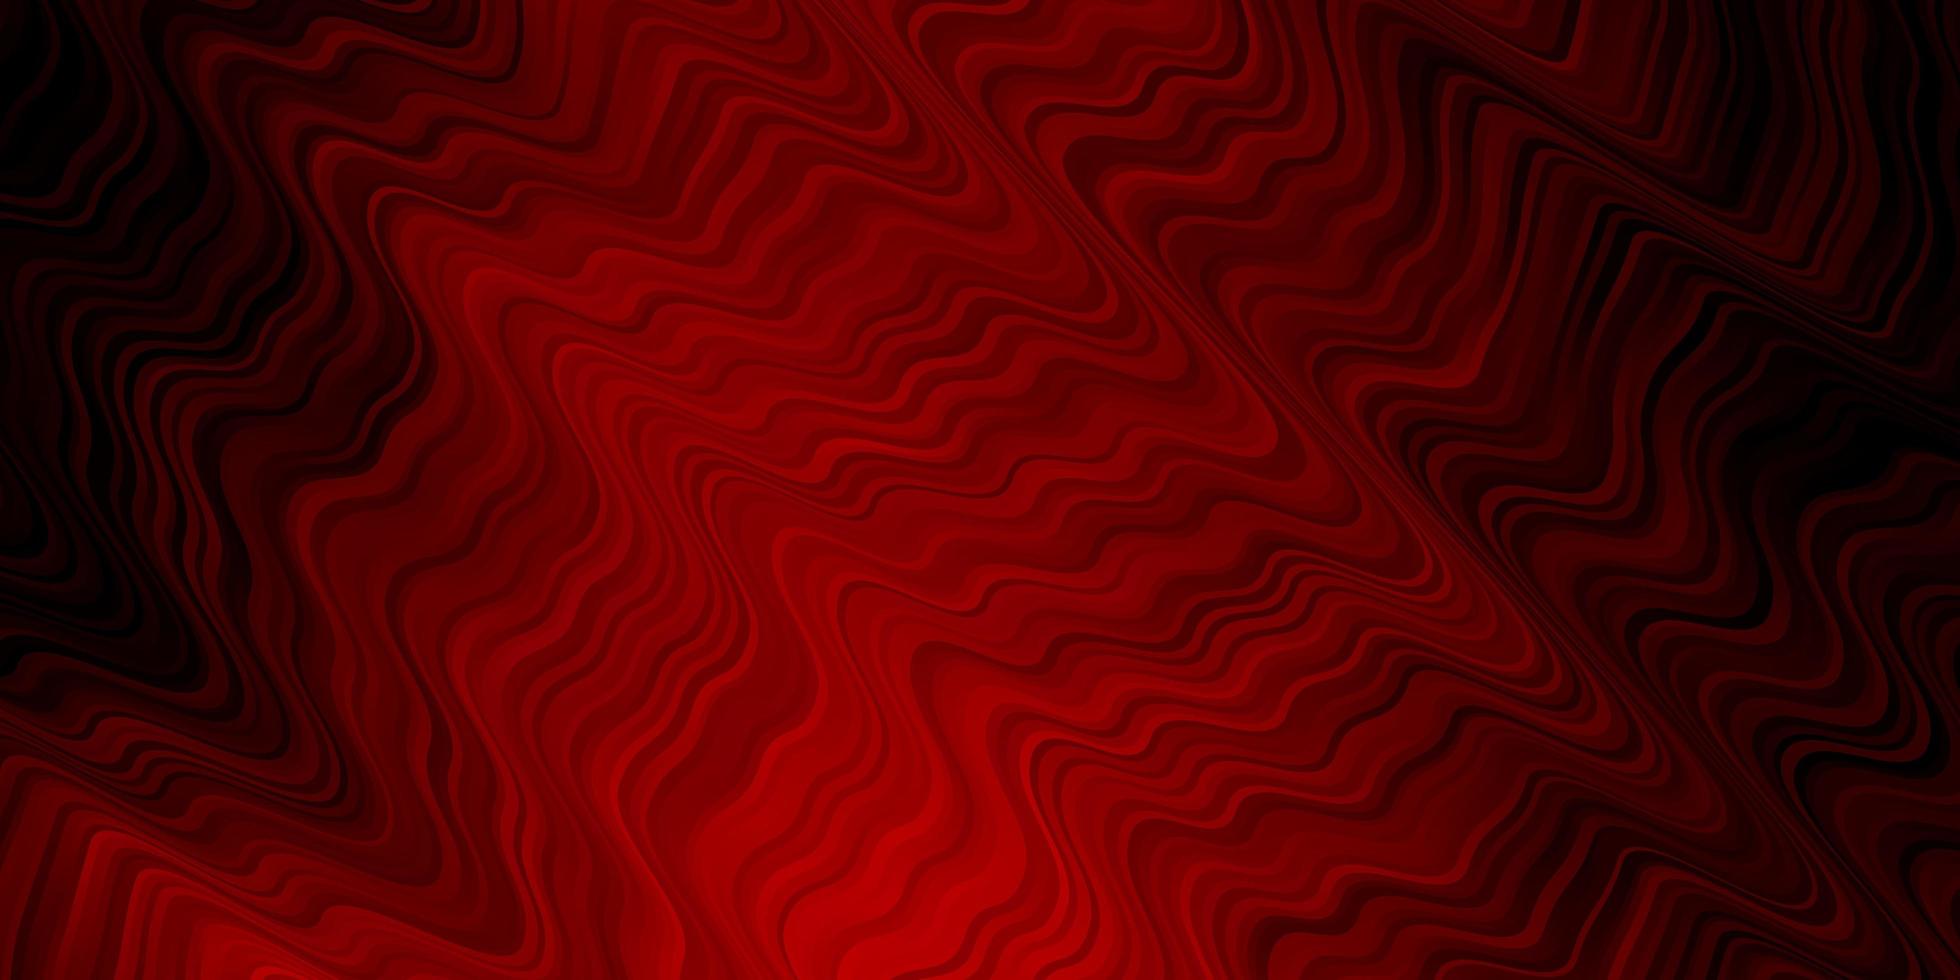 trama vettoriale rosso scuro con arco circolare.